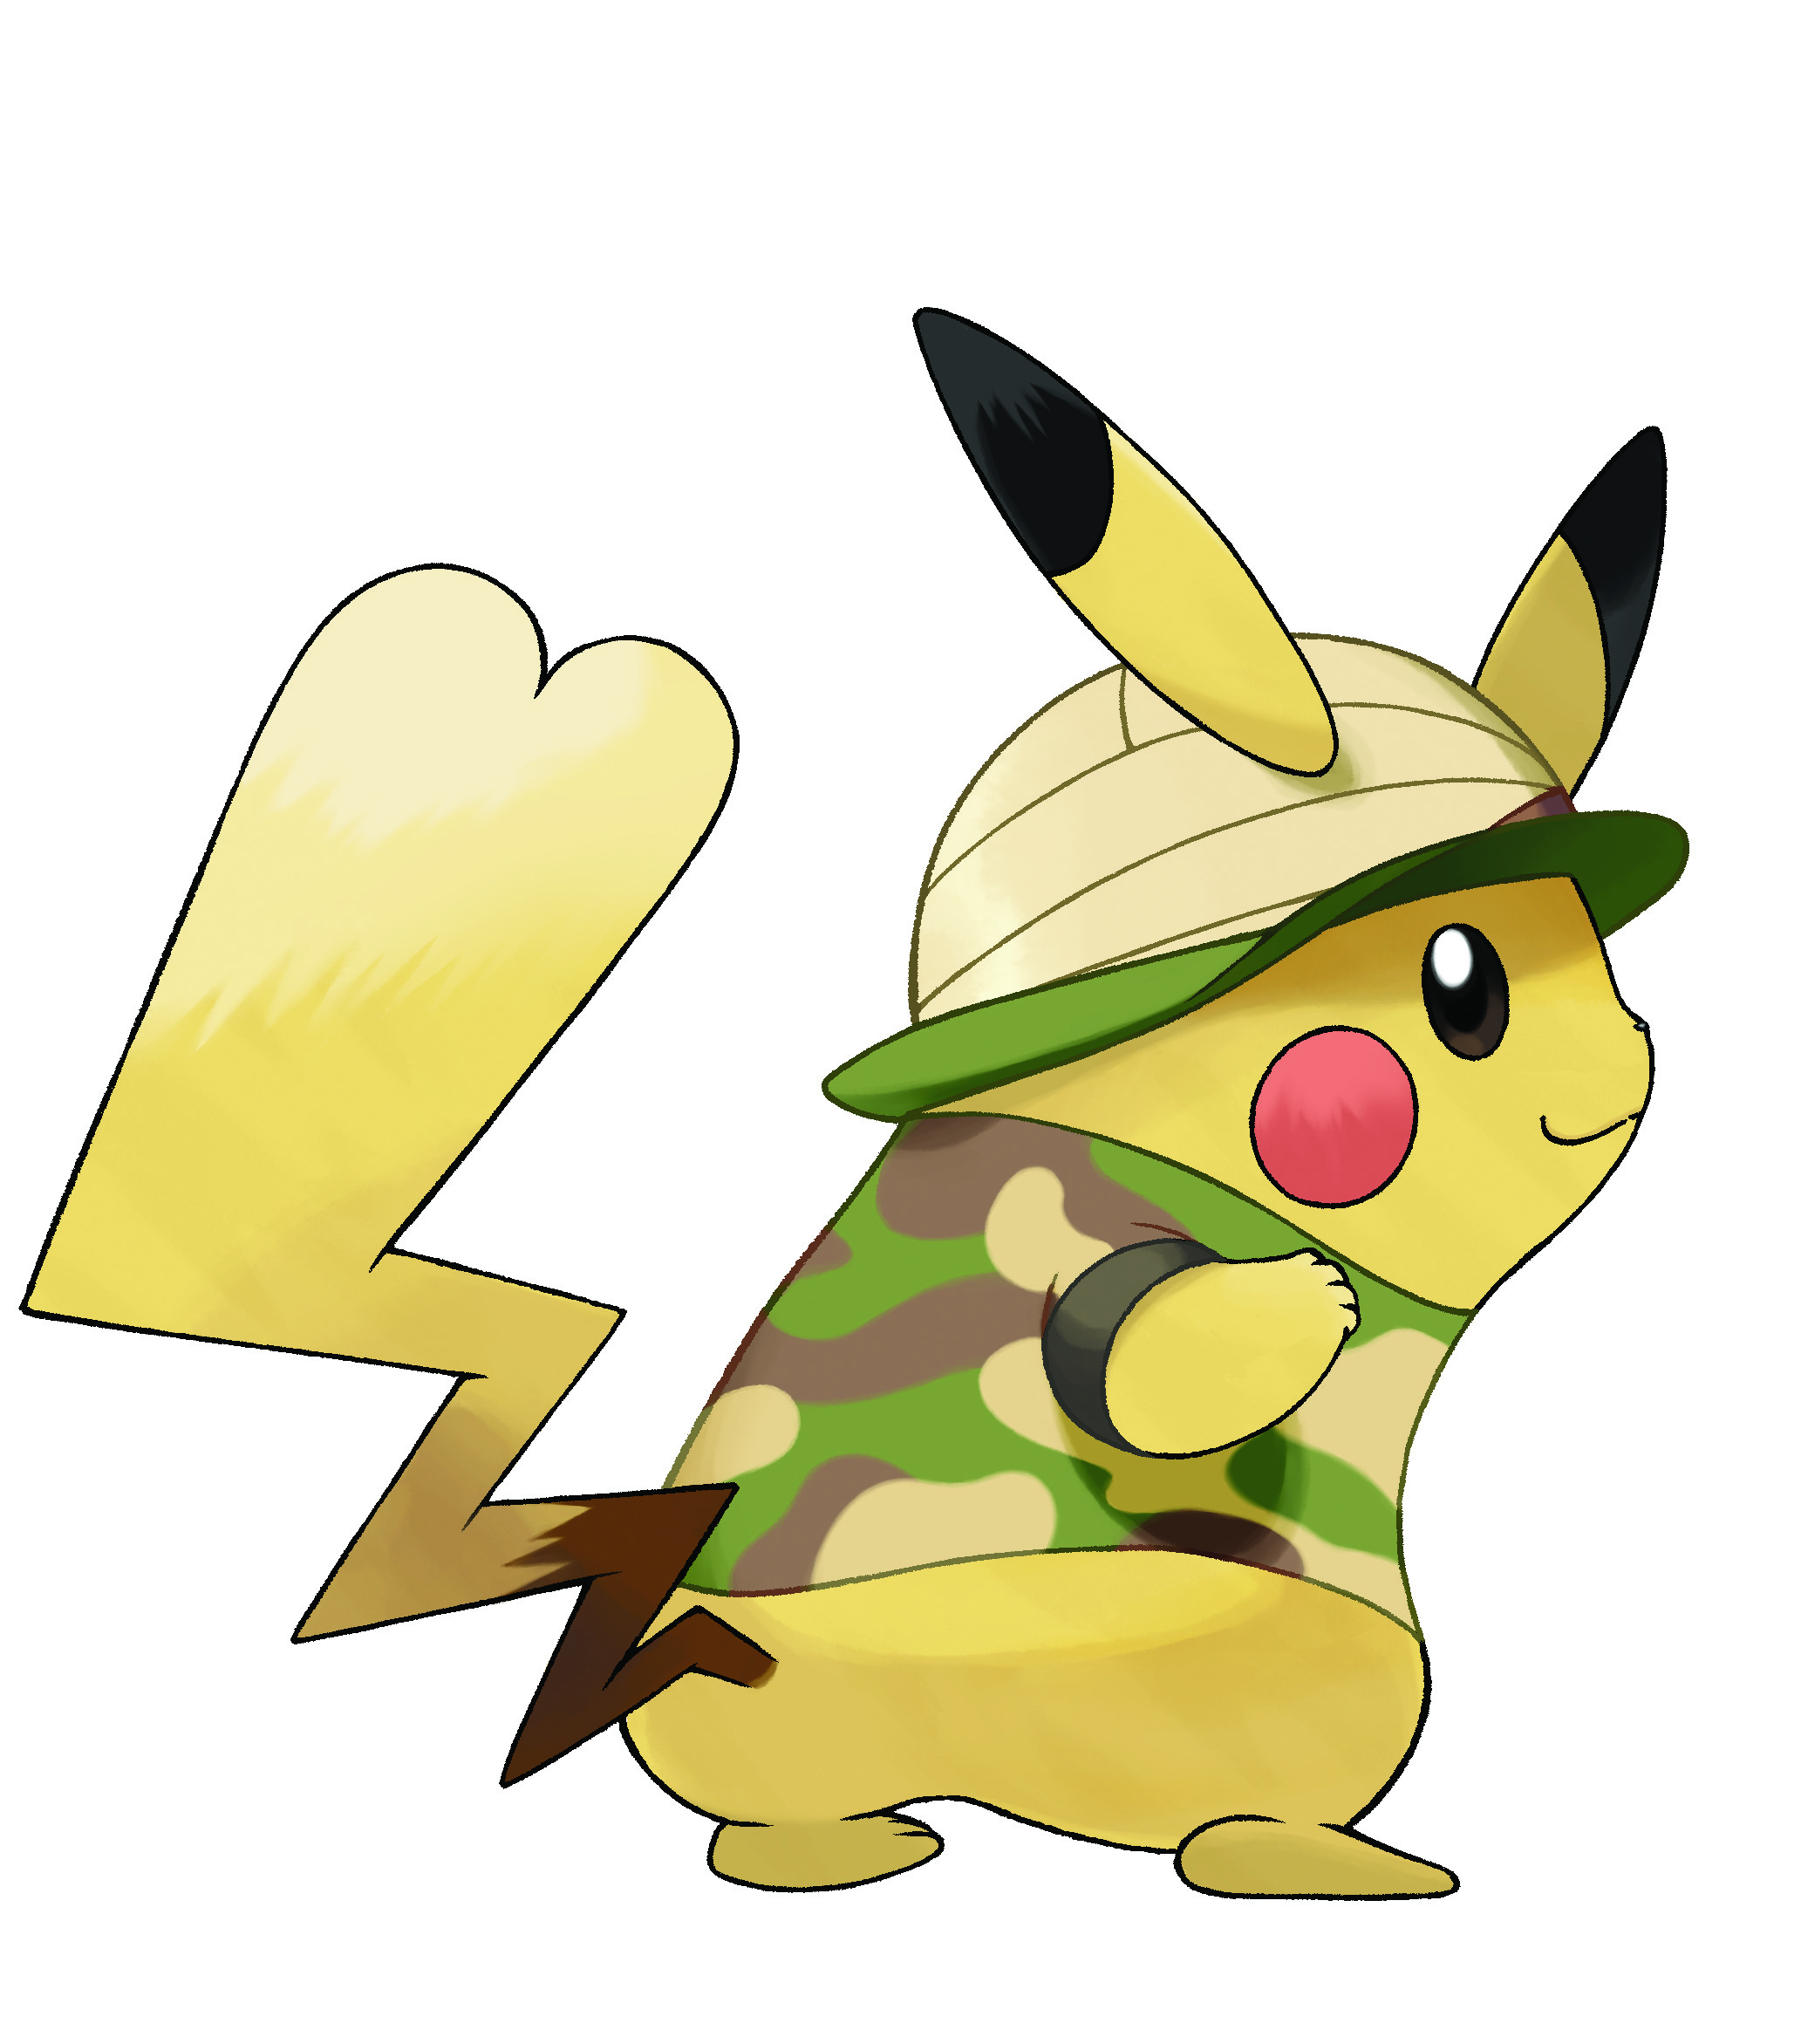 pokemon let's go pikachu nintendo eshop